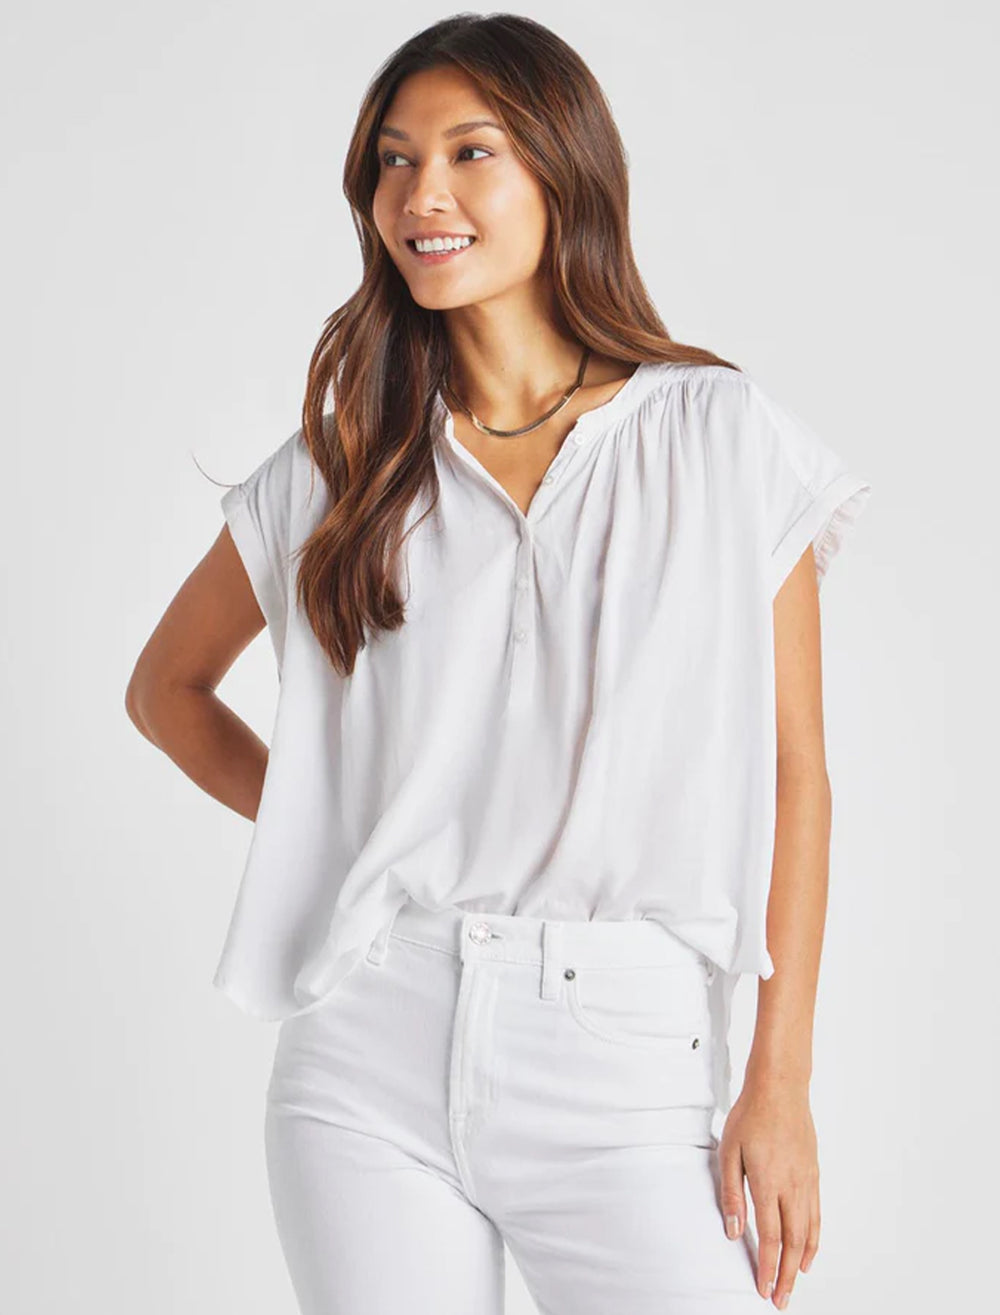 Model wearing Splendid's paloma blouse in white.